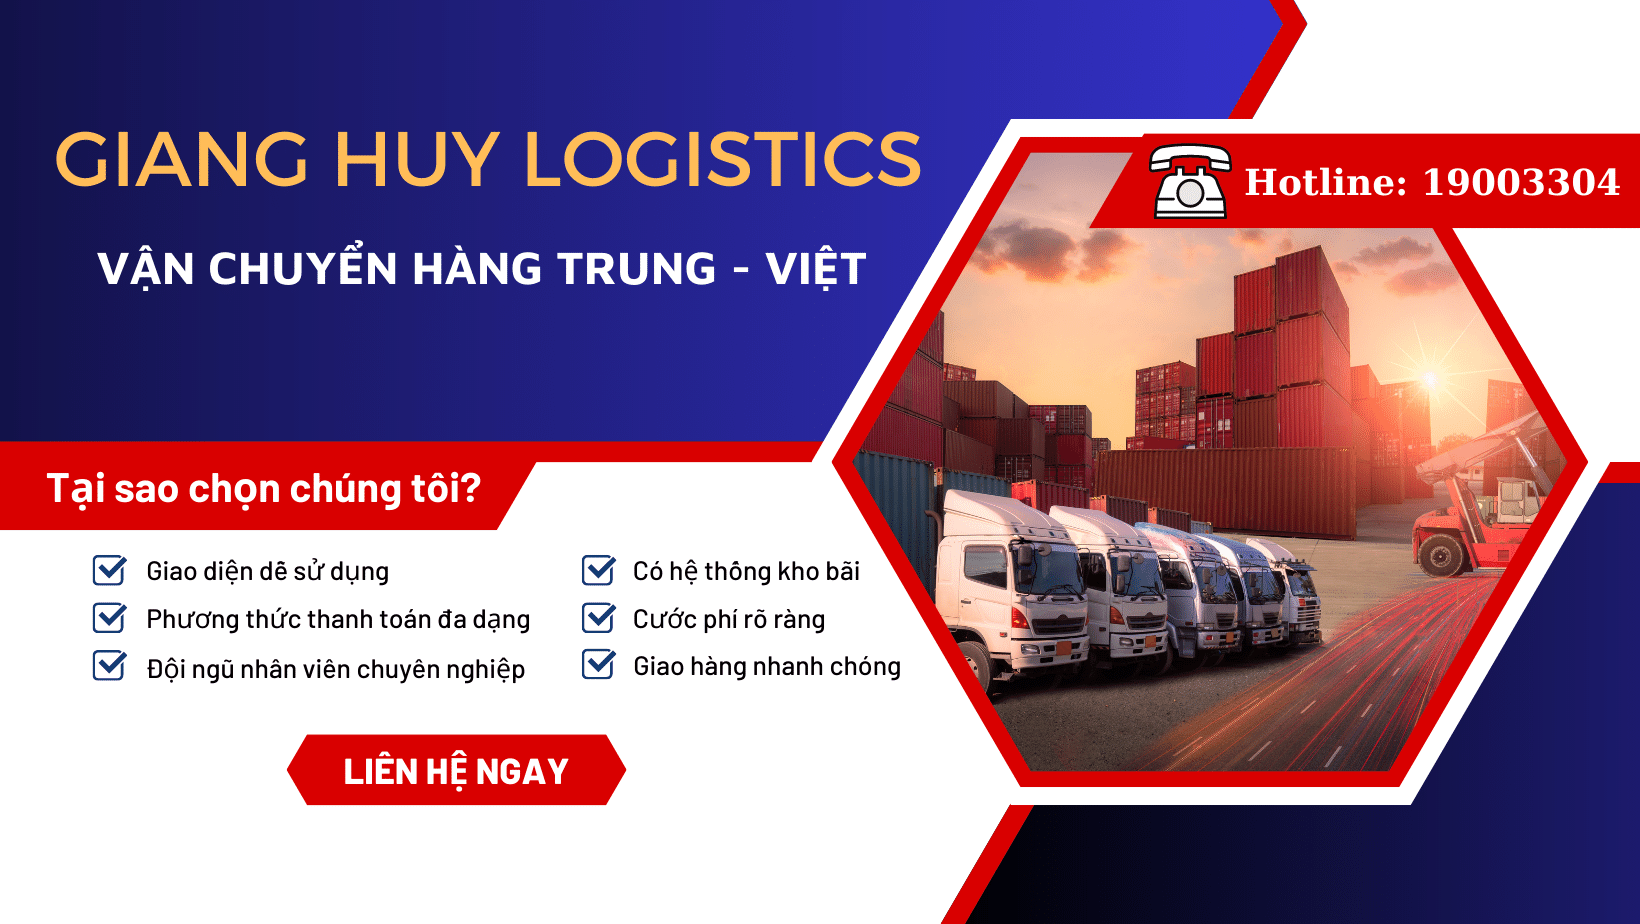 Dịch vụ vận chuyển hàng Trung Quốc siêu tốc, an toàn nên chọn Giang Huy Logistics